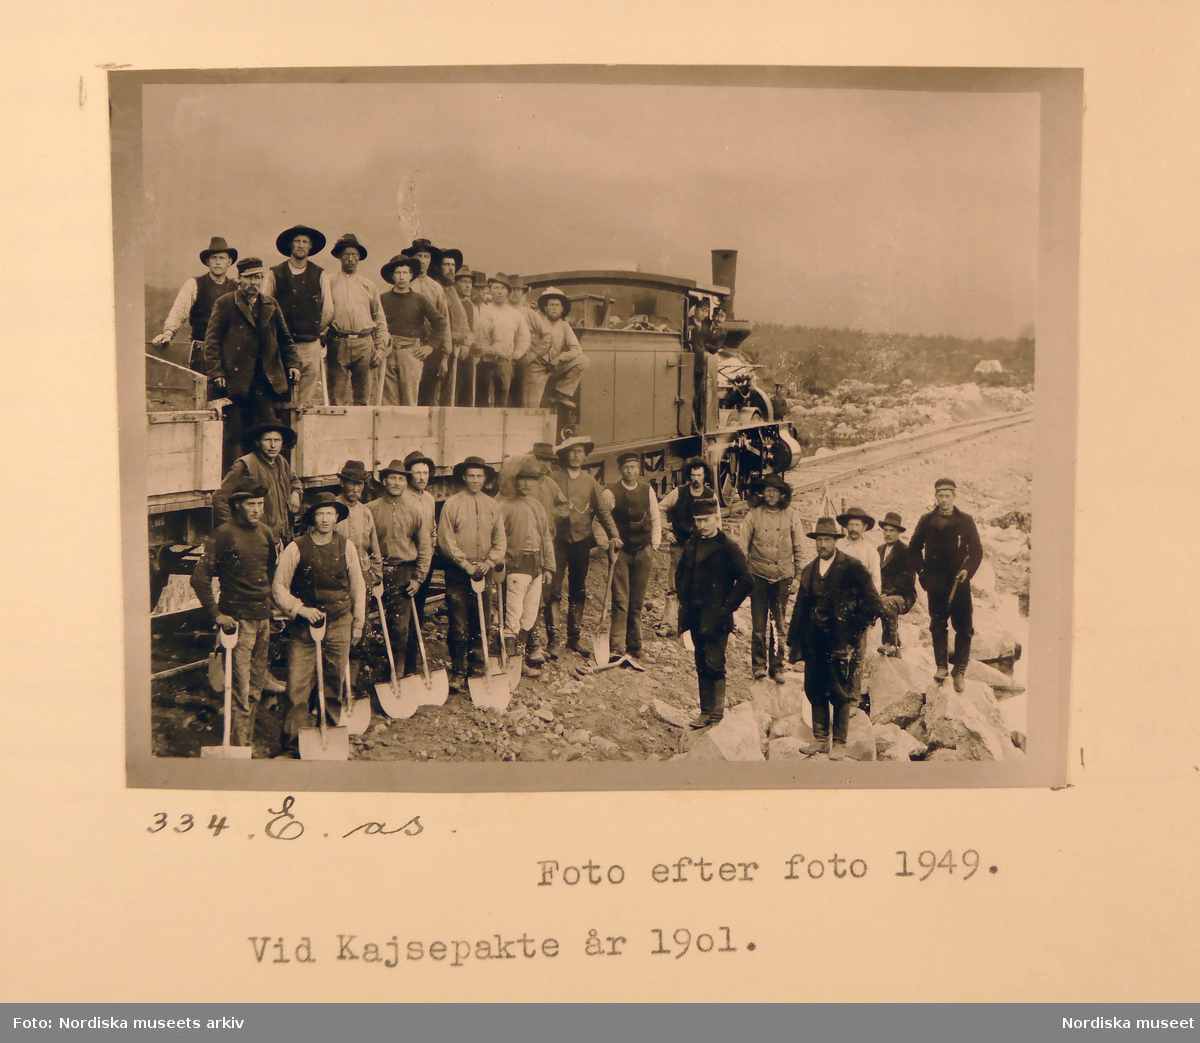 Grupporträtt av rallare stående på och intill tåg vid järnvägen, Kajsepakte år 1901.